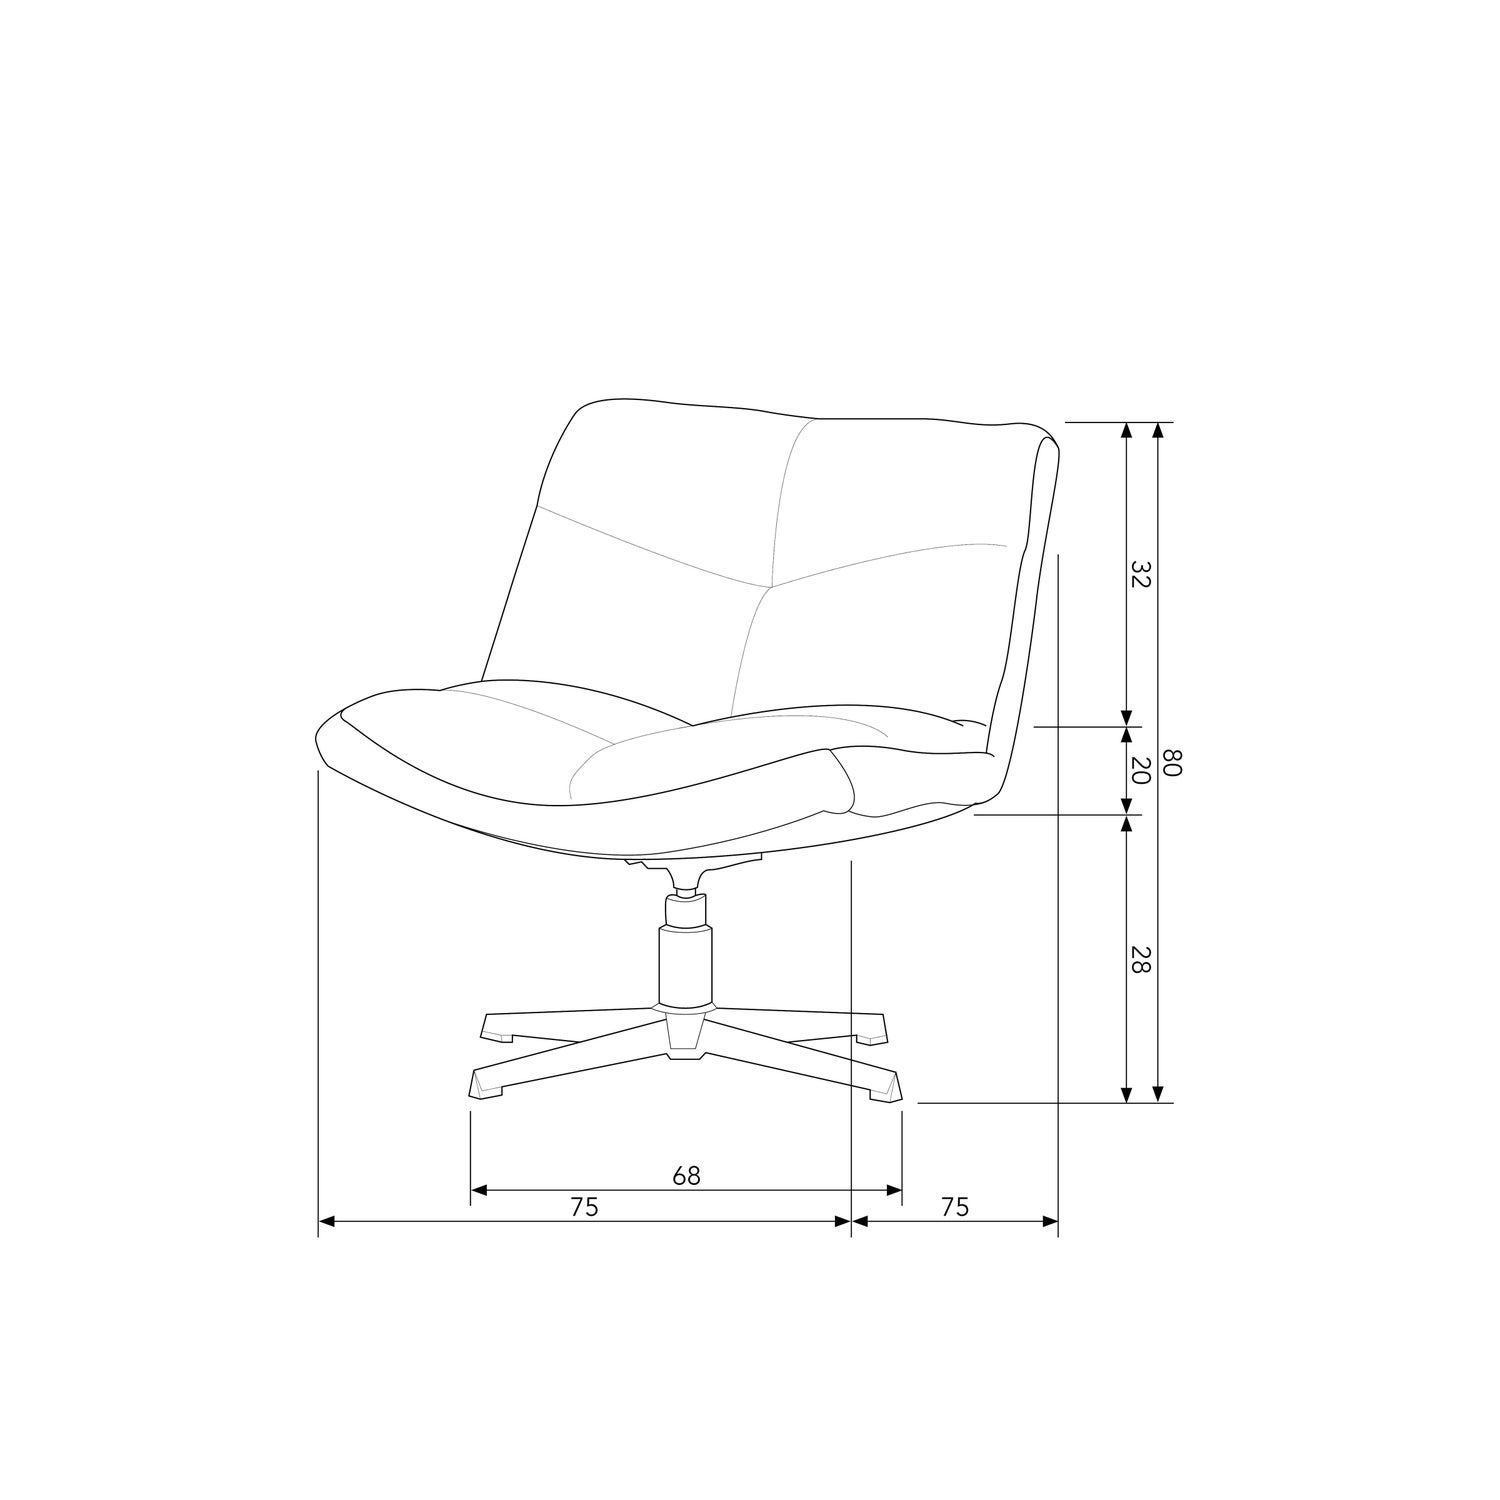 377118-Z-377118-R-377118-O-377118-A-50_BT_Vinny_swivel_armchair.jpg?auto=webp&format=png&width=1500&height=1500